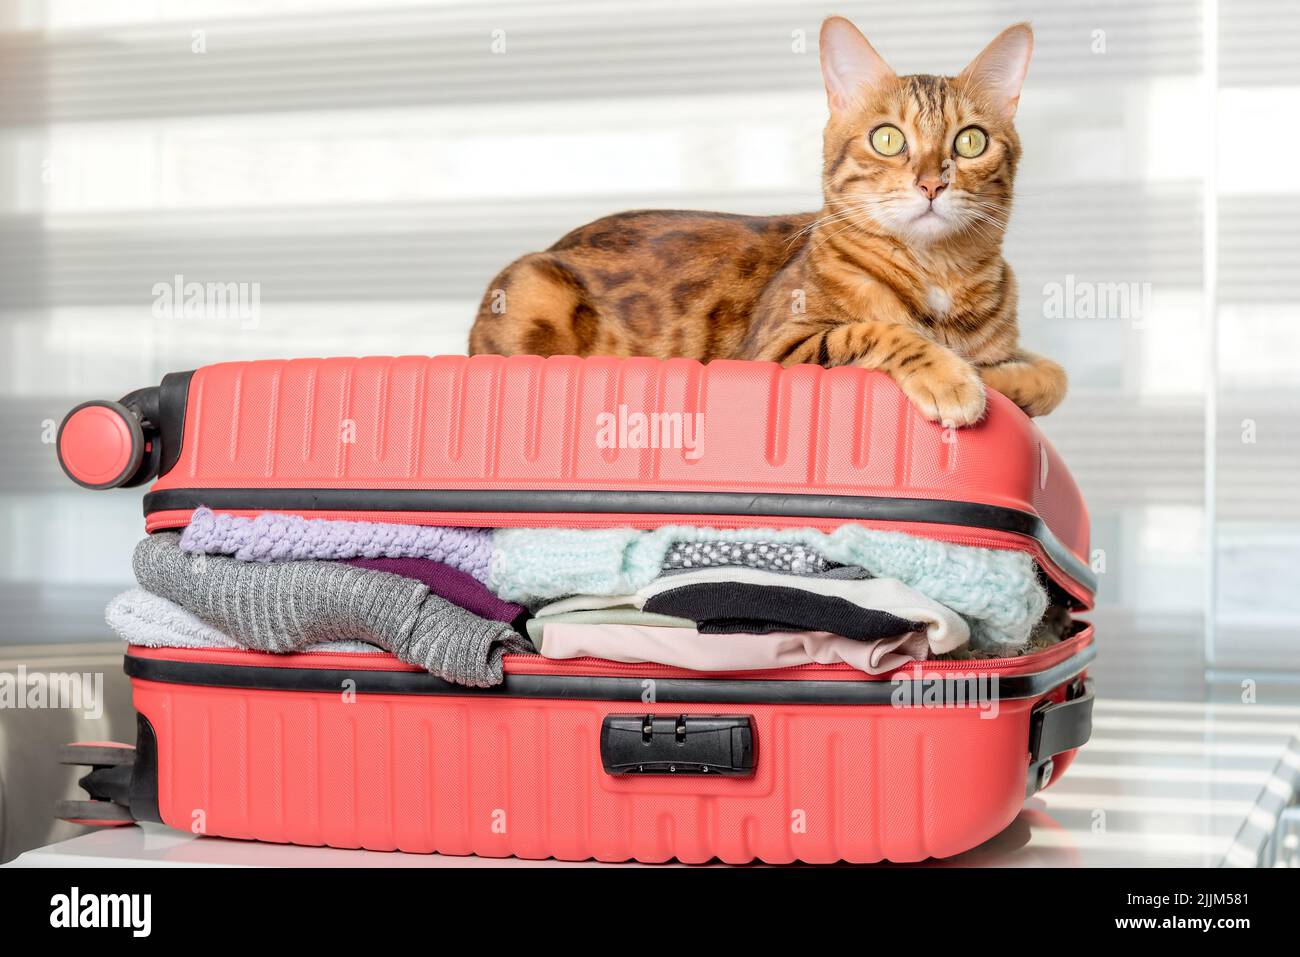 Die Ingwerkatze liegt auf einem Koffer voller Kleidung und Sachen für den Rest. Sommerreisen, Reisevorbereitung, Gepäckpacken. Stockfoto